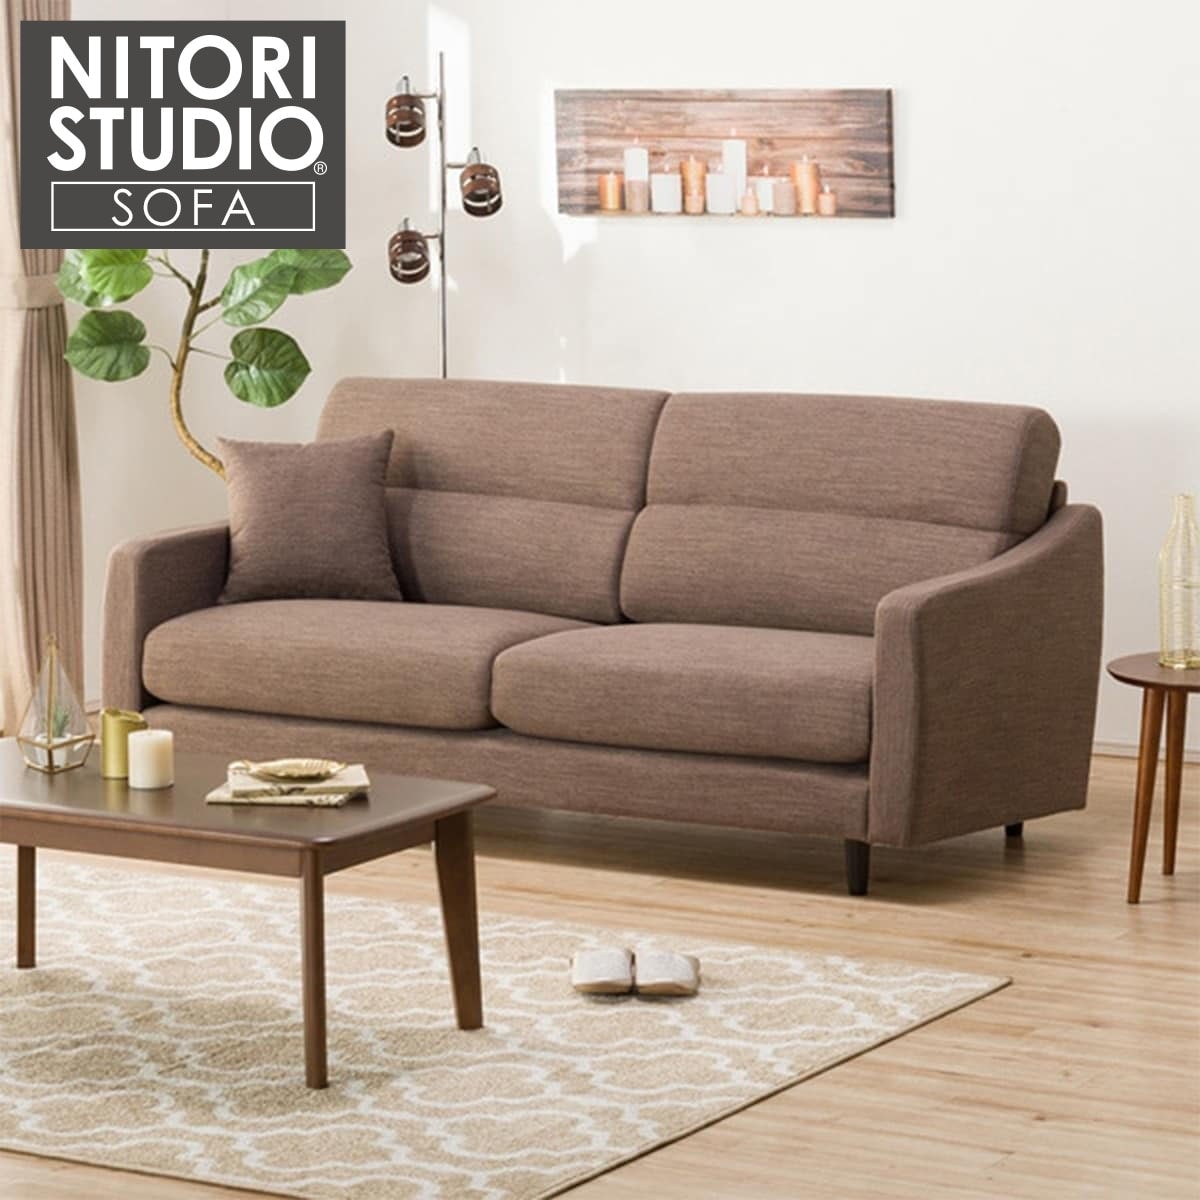 ニトリ ソファ NITORI 無印 MUJI IKEA unico ACME グレイ系 ソファ 